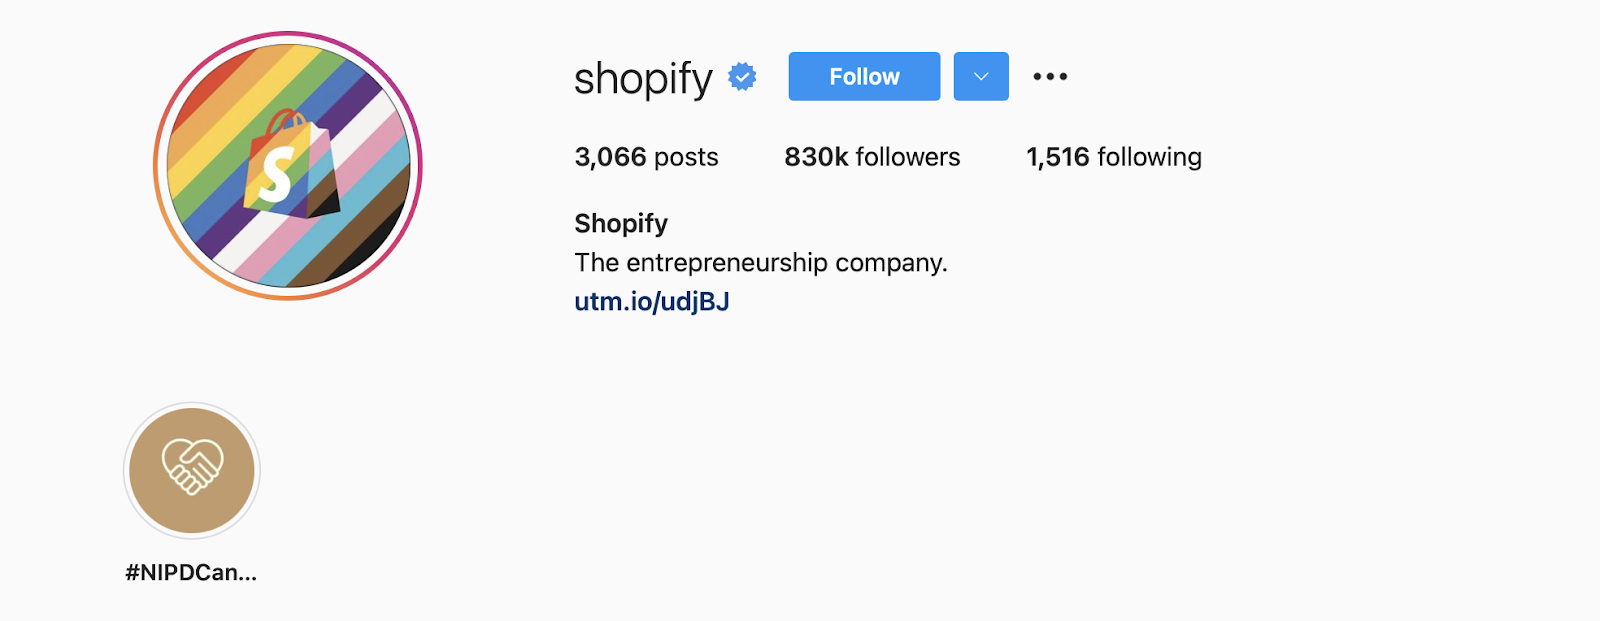 How to write instagram bio - Shopify